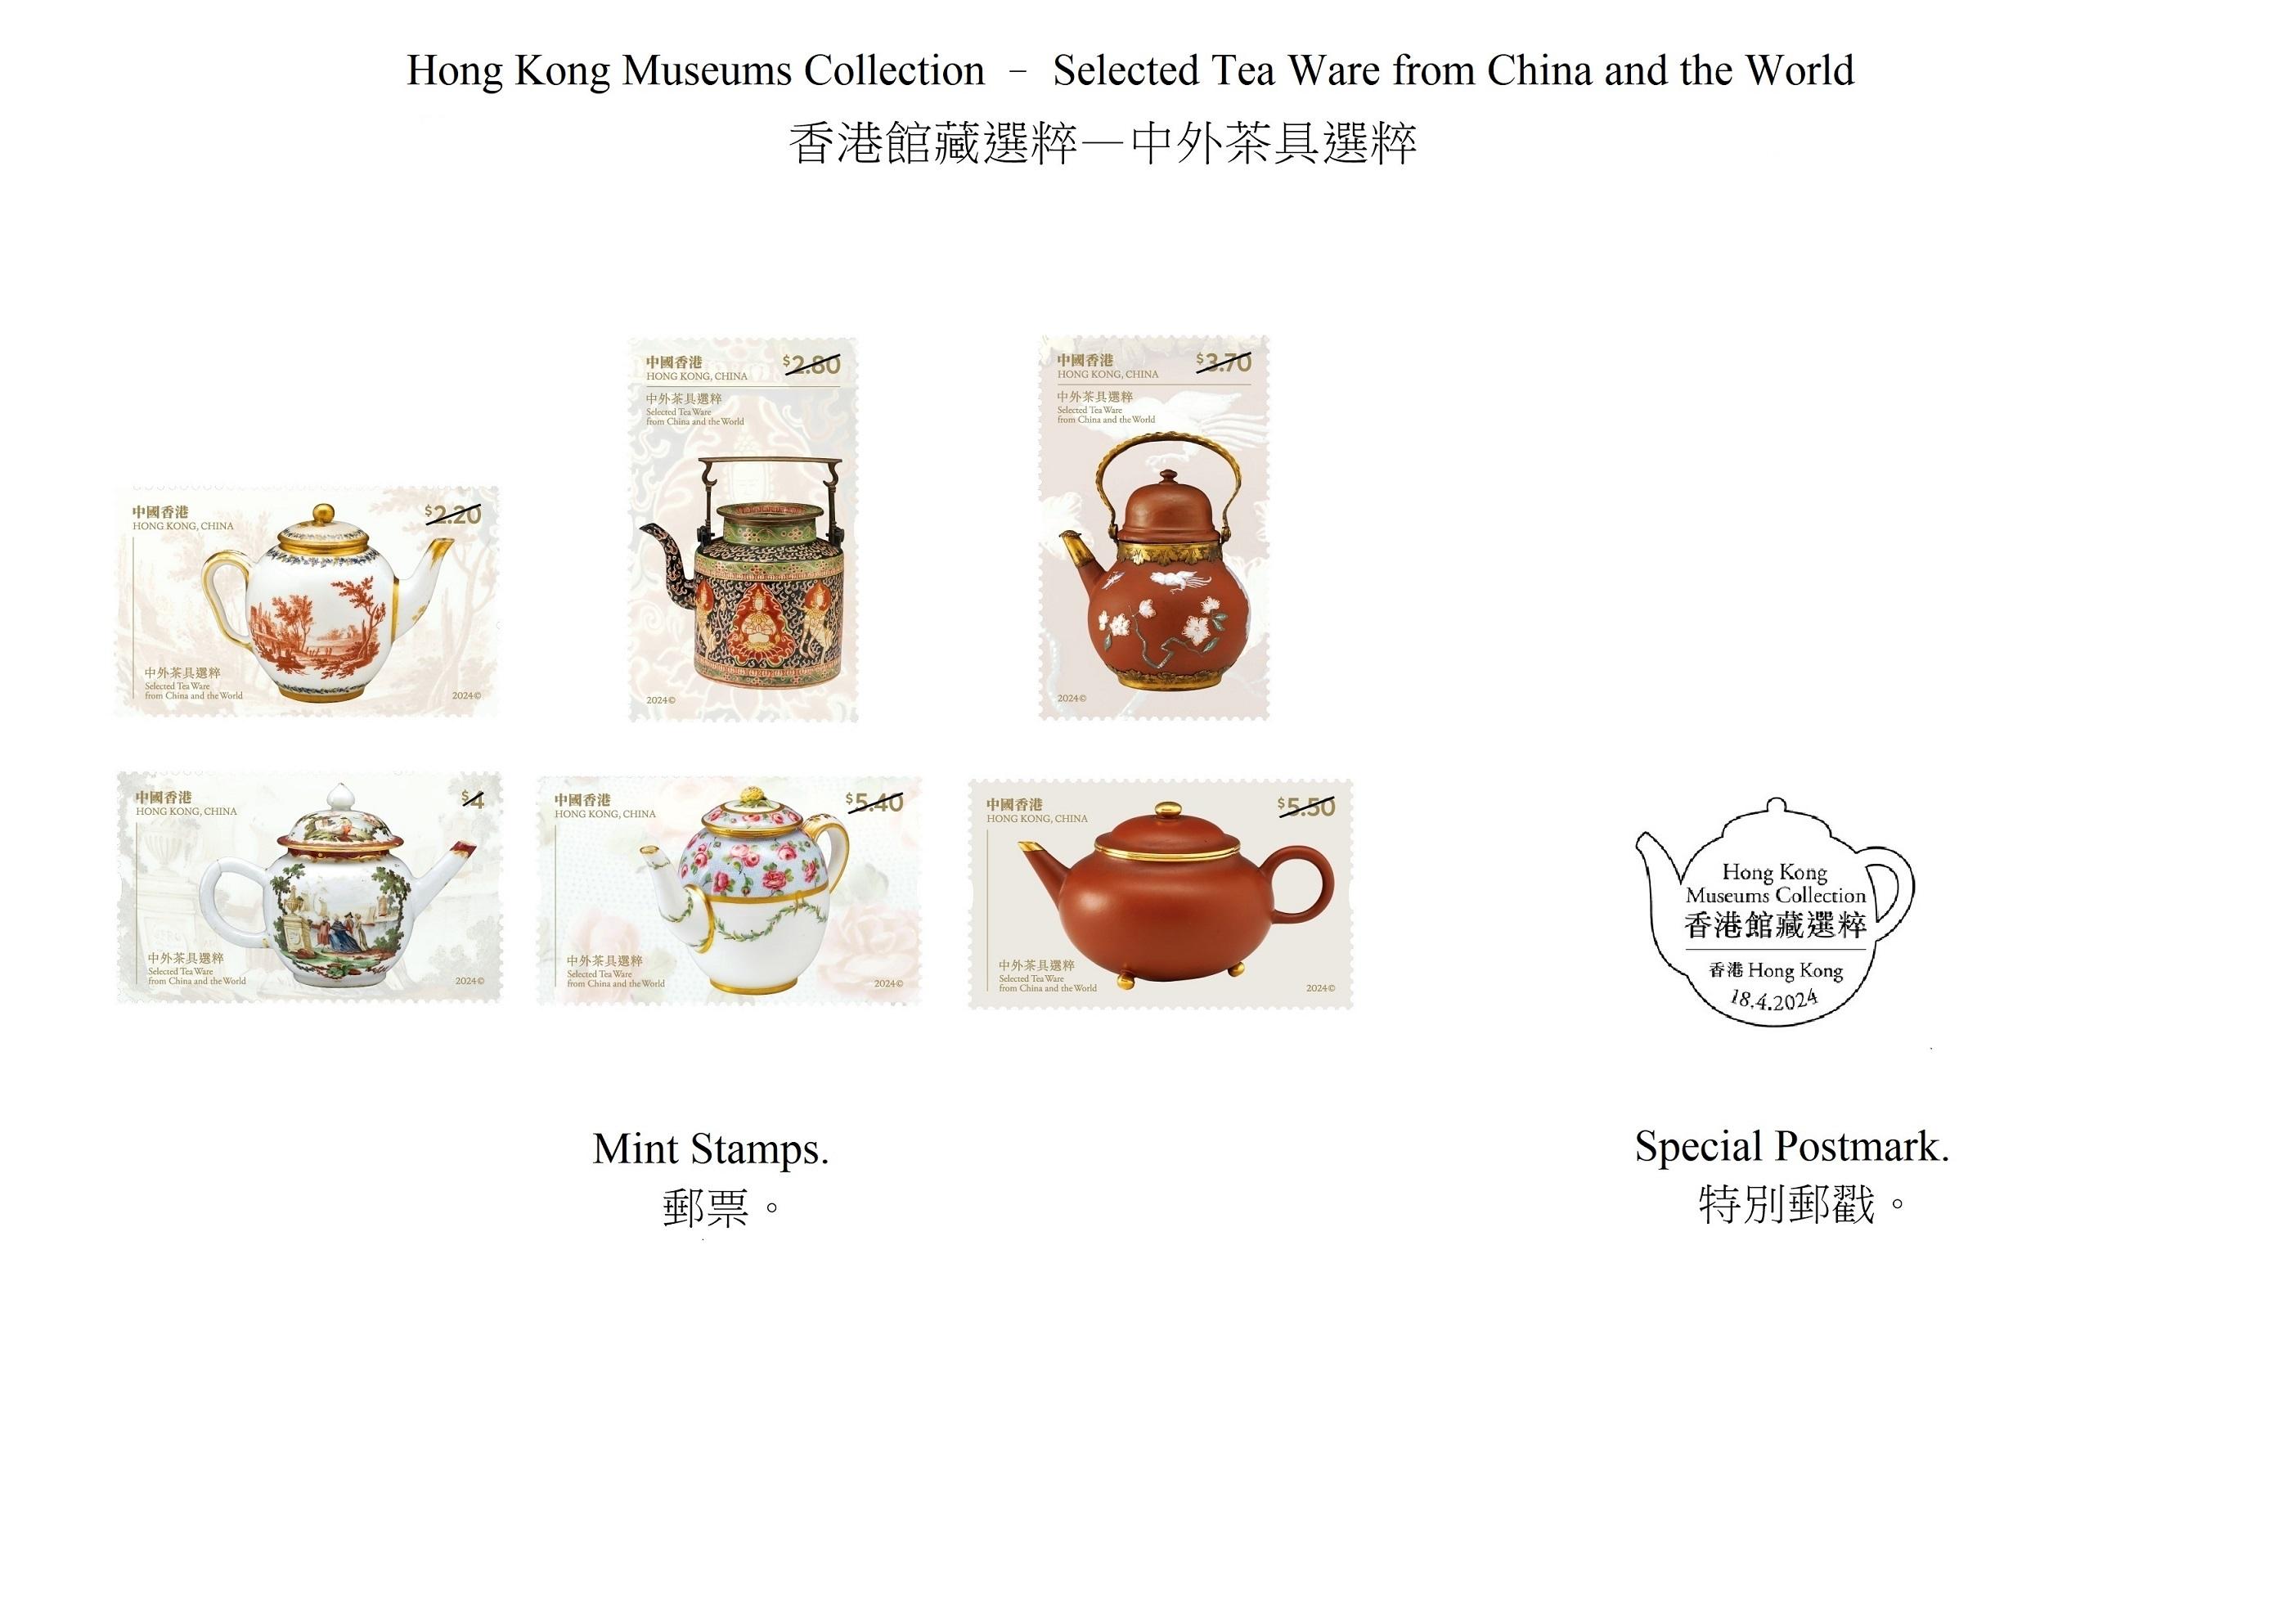 香港邮政四月十八日（星期四）发行以「香港馆藏选粹──中外茶具选粹」为题的特别邮票及相关集邮品。图示邮票和特别邮戳。